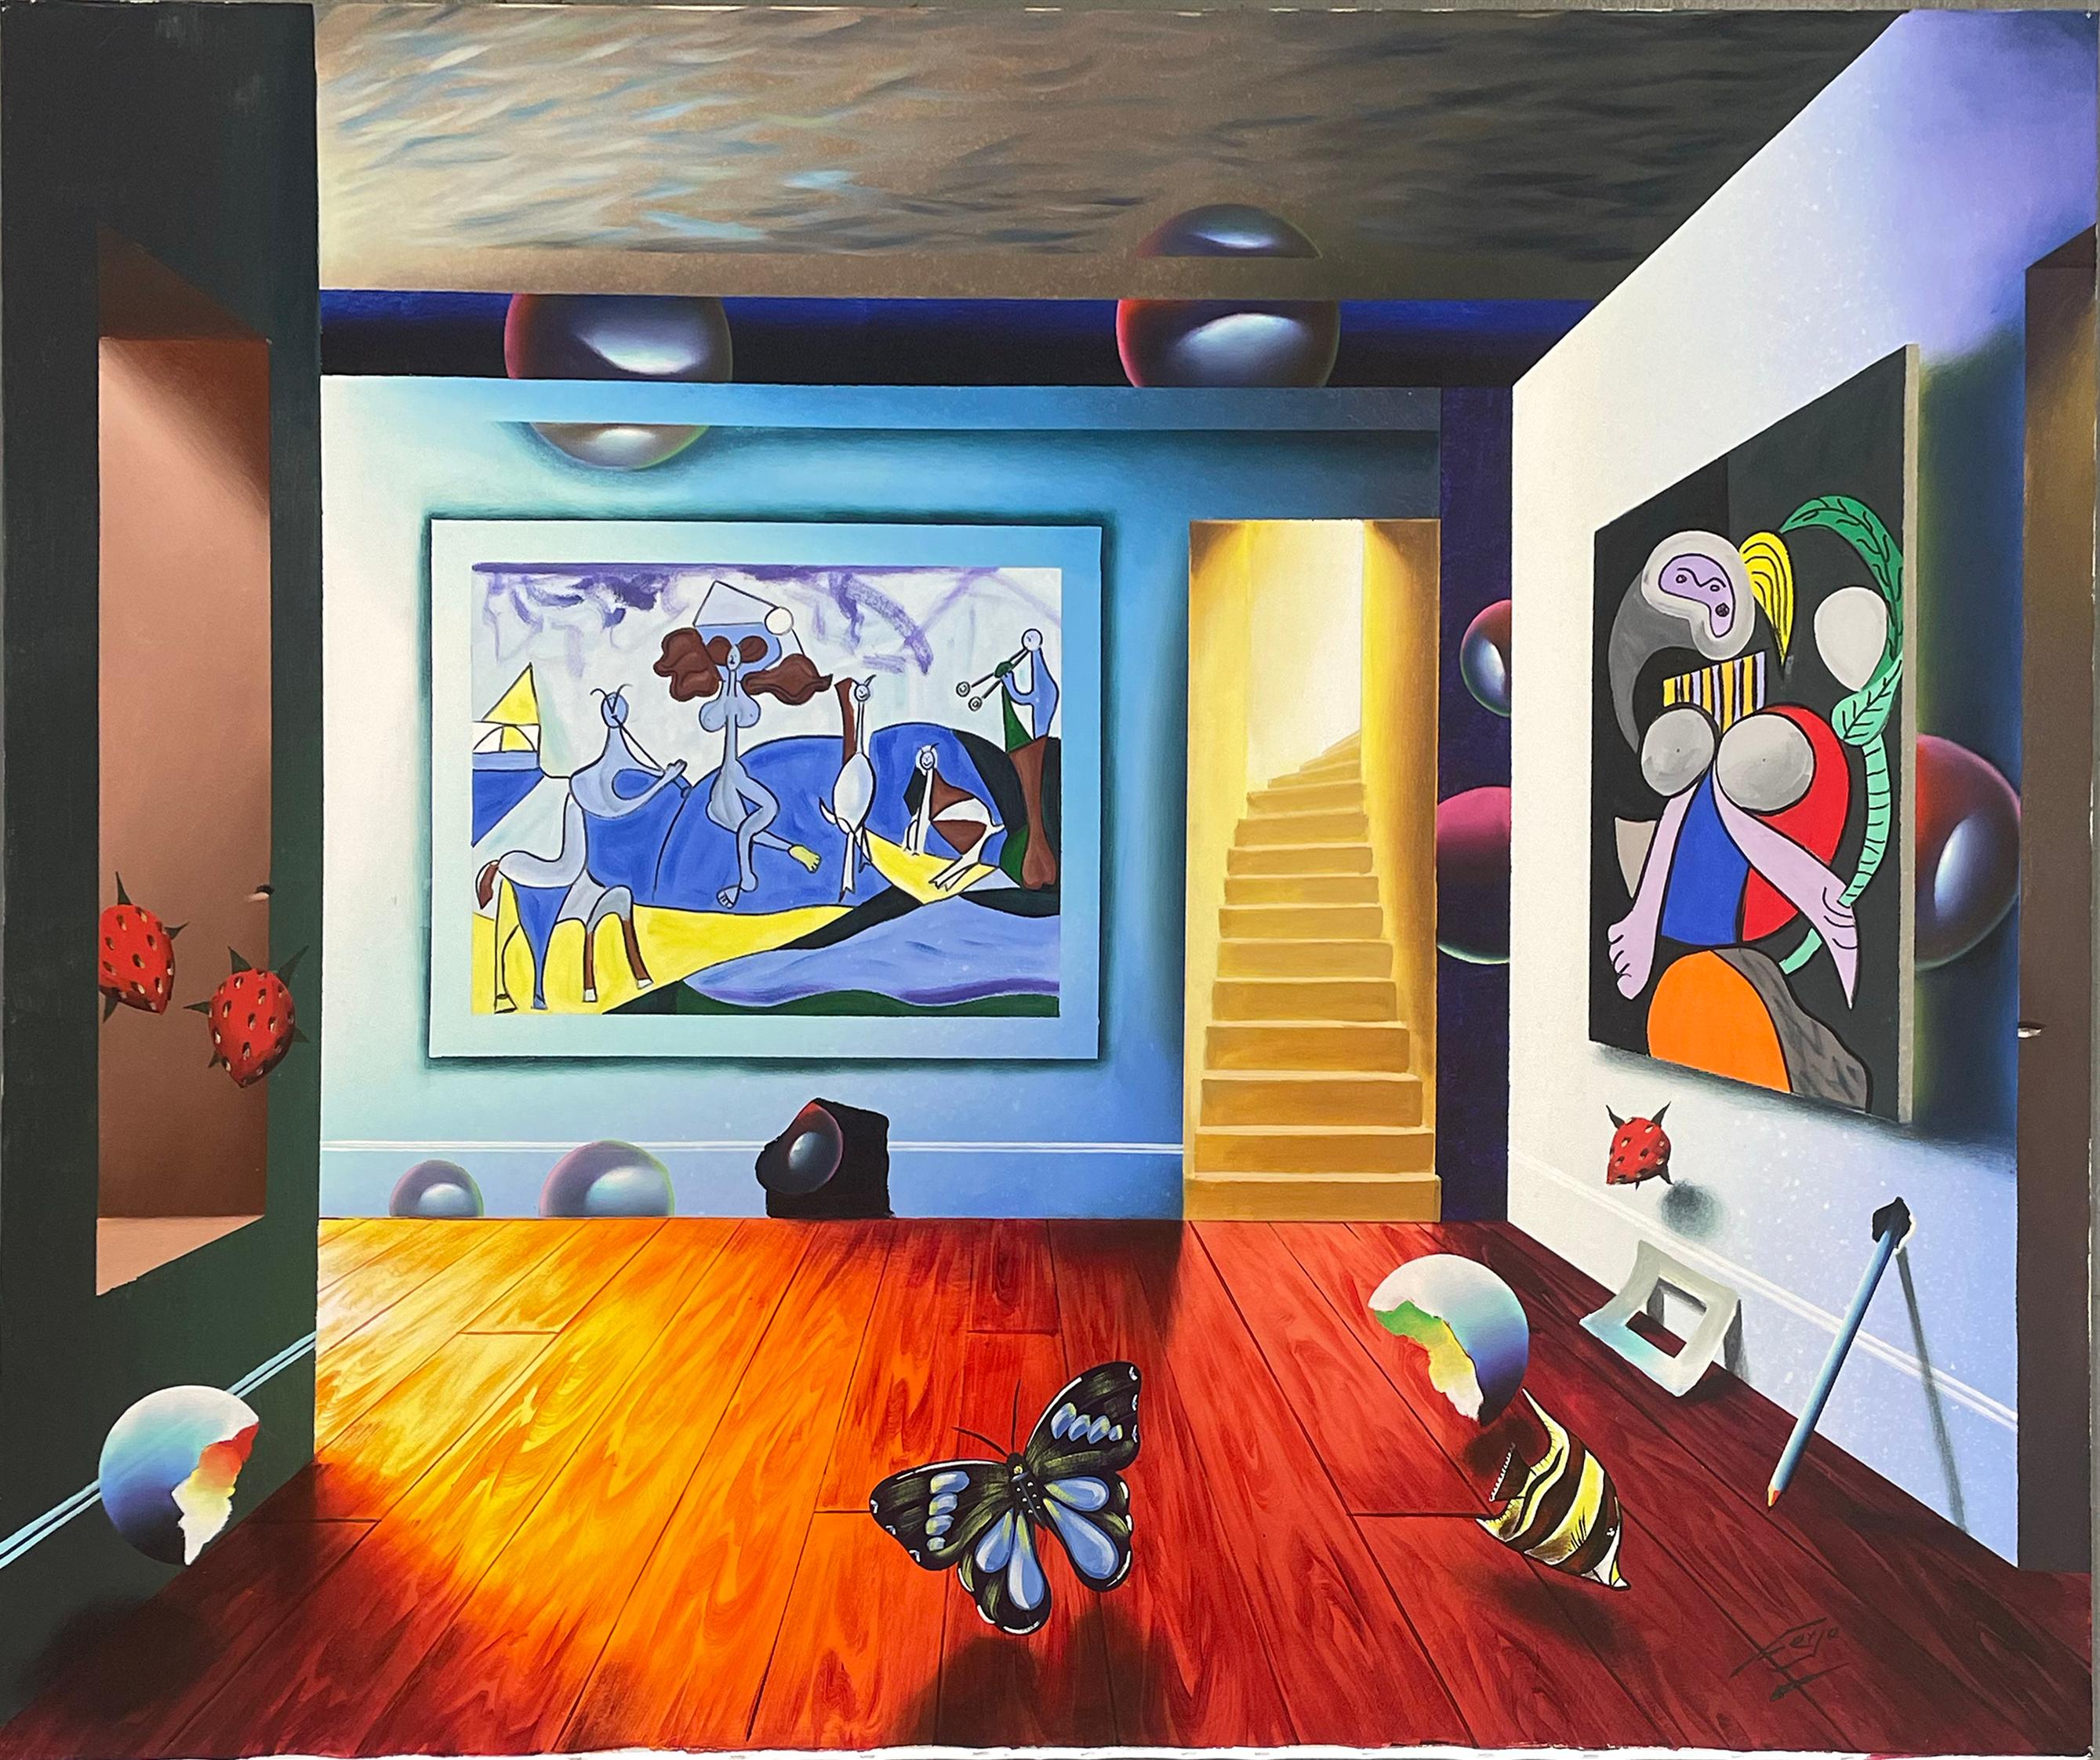 Interior Painting Ferjo, Fernando de Jesus Oliveira - Hommage au surréalisme de Picasso